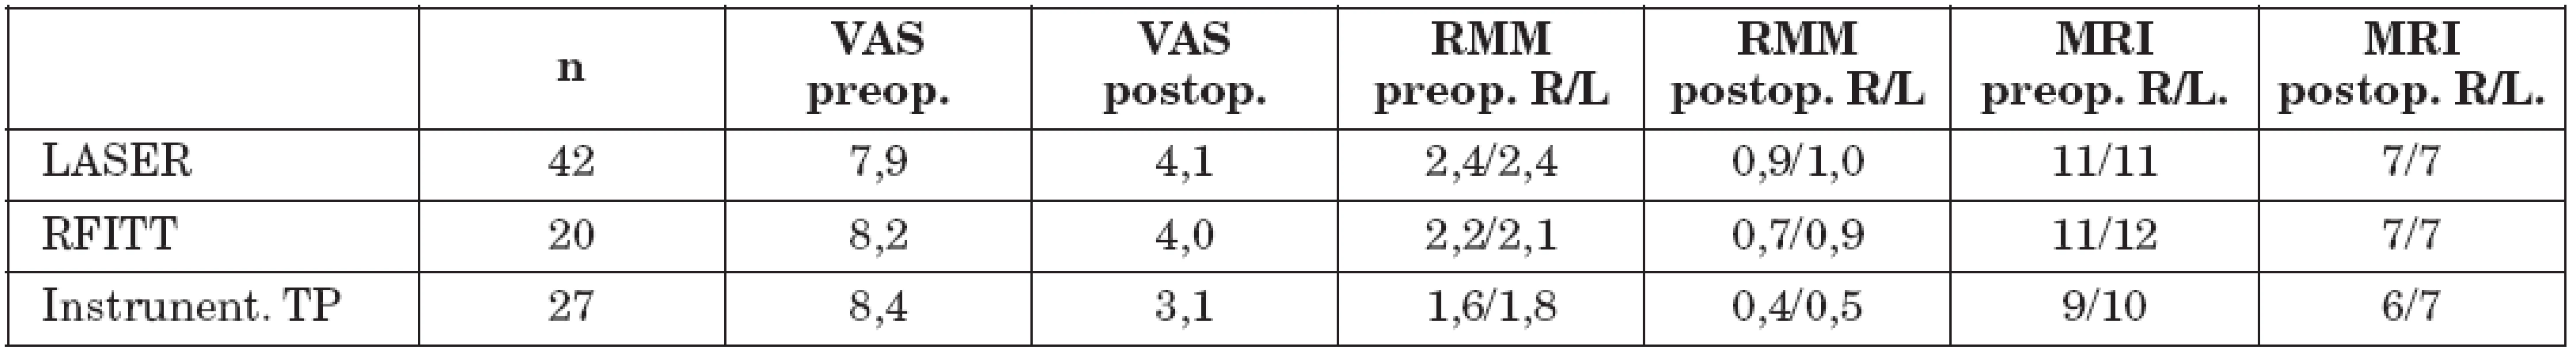 Výsledky studie jednotlivých technik mukotomie/turbinoplastiky. VAS = vizuální analogová škála; RMM = rinomanometrie (číselné hodnoty udávají rezistenci/odpor/ nosnímu proudění pro pravou /R/ a levou /L/ nosní dutinu); MRI = vyšetření magnetickou rezonancí (číselné hodnoty udávají šíři dolní nosní skořepy v mm pro pravou /R/ a levou /L/ nosní dutinu).